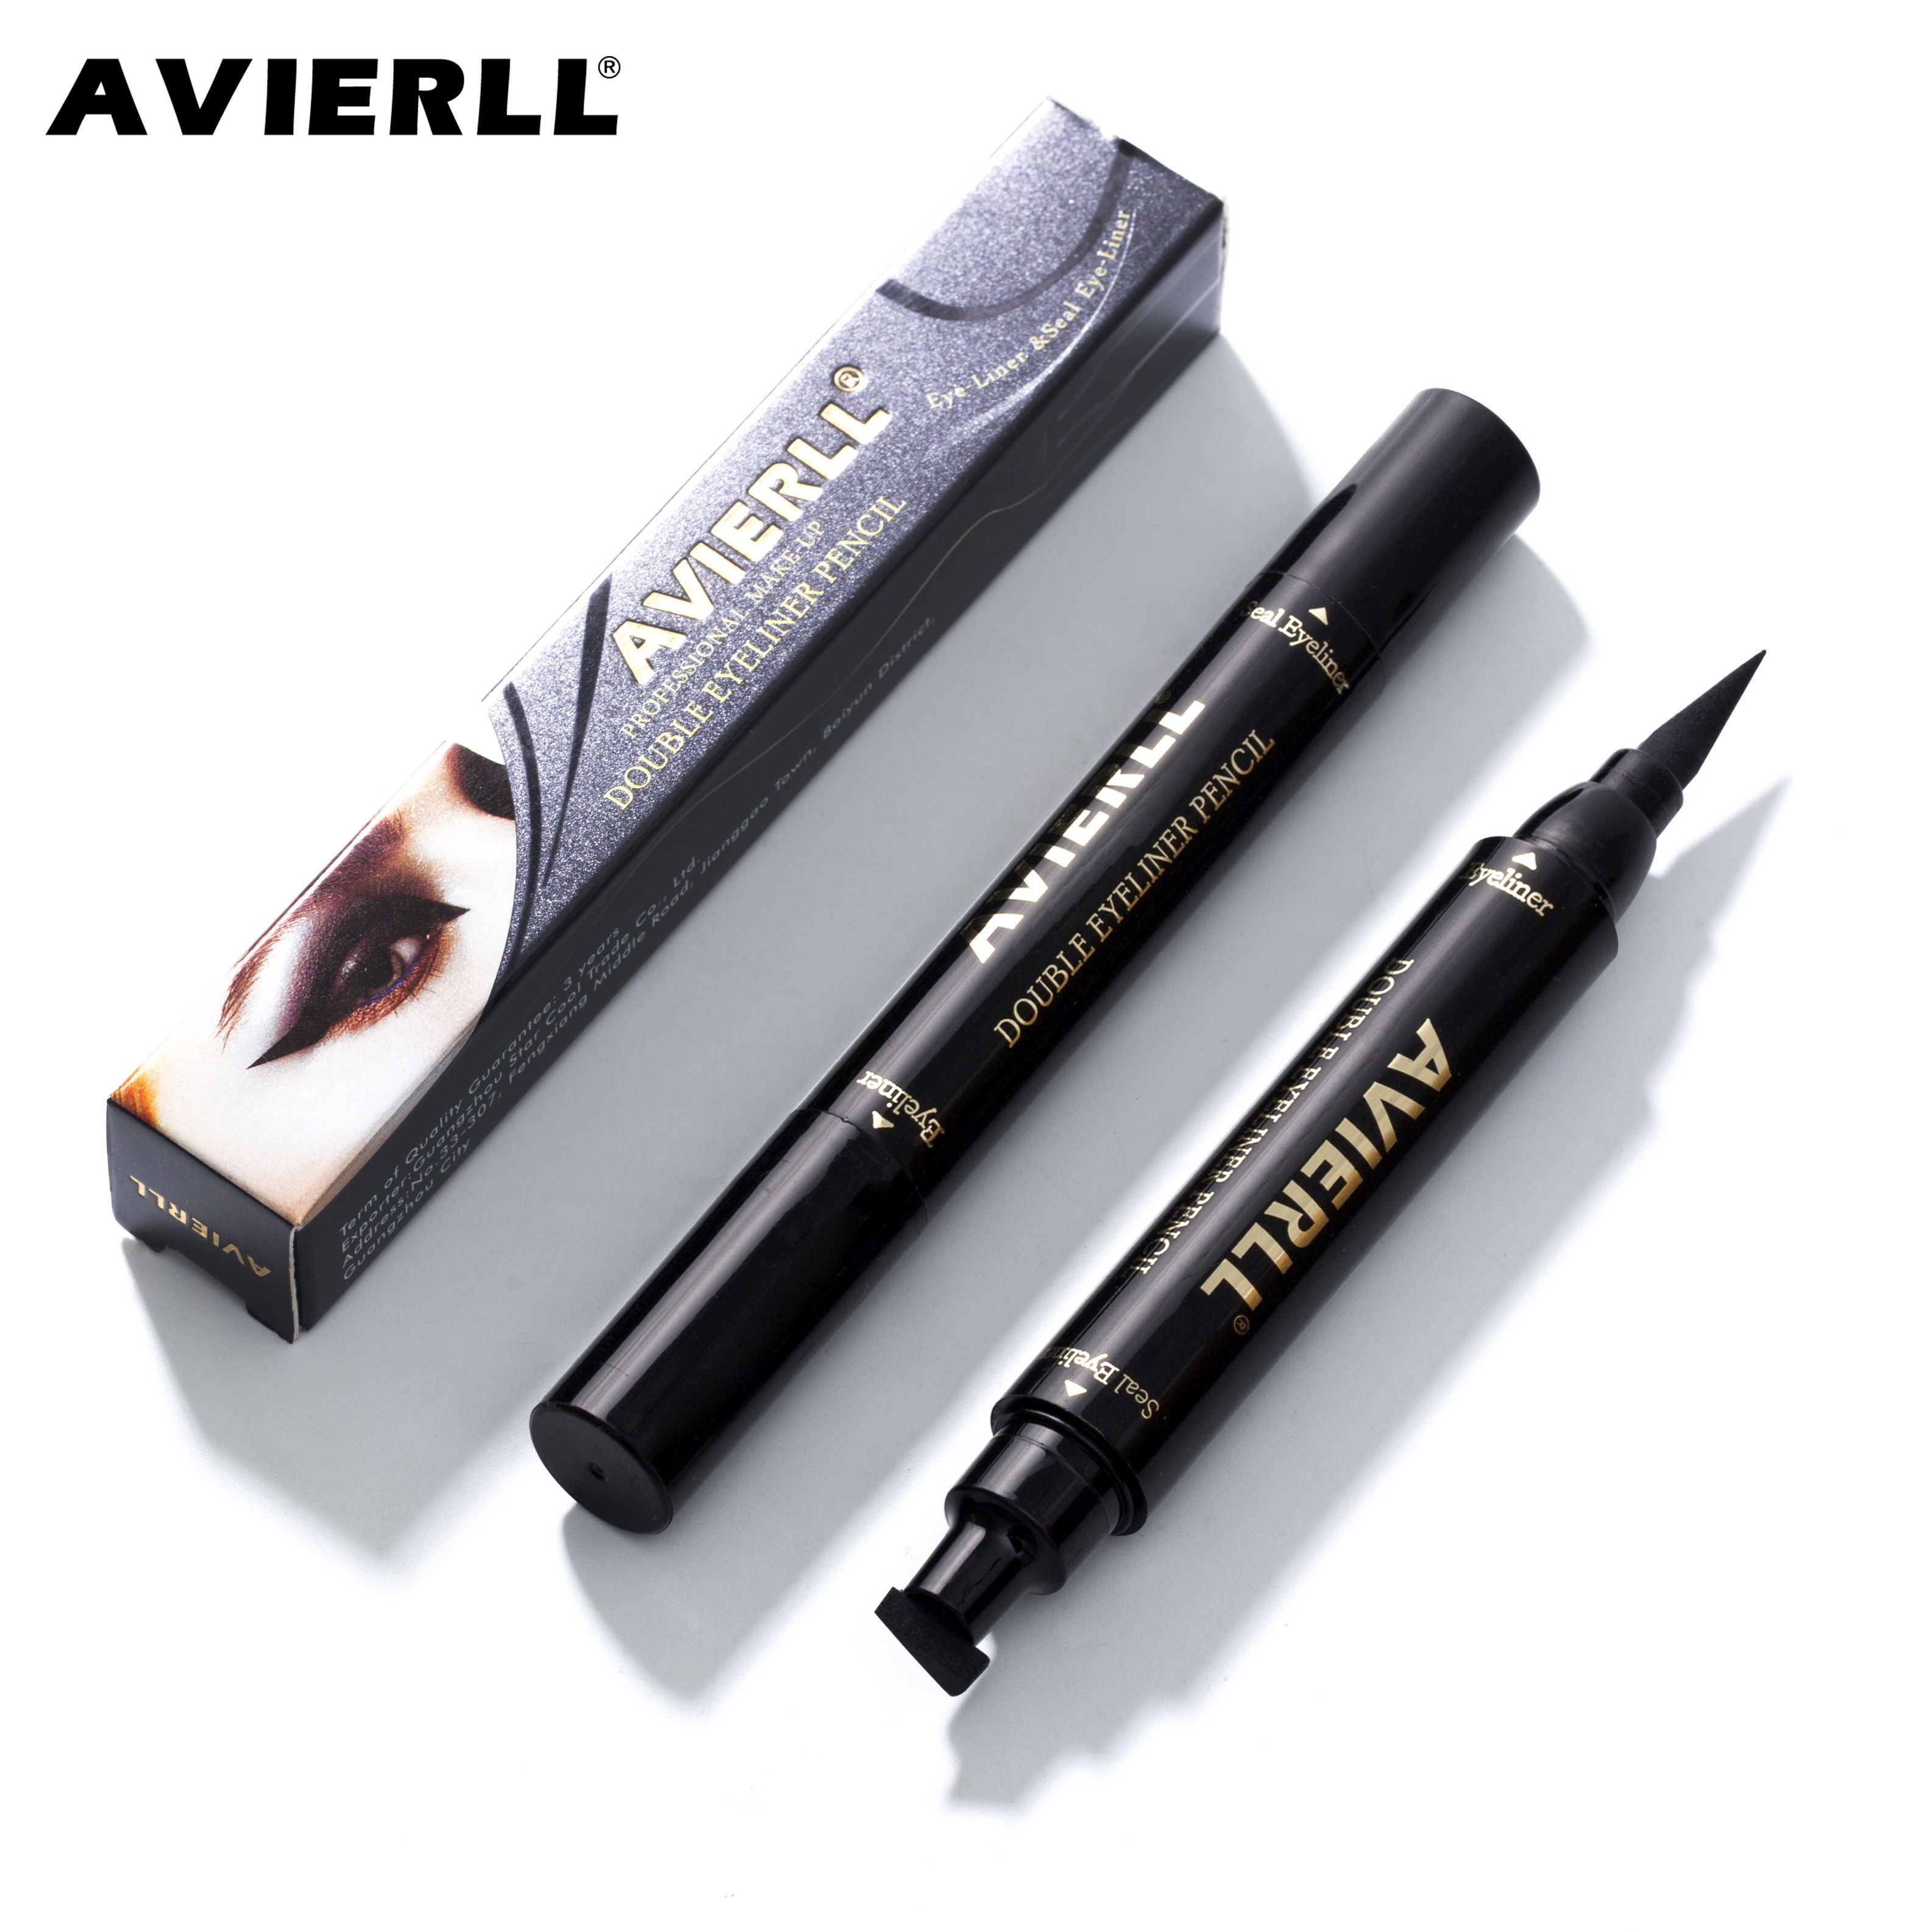 

Waterproof 2-in-1 Winged Eyeliner Stamp - Long-lasting, Quick Flick, Smudge-proof, Natural Cat Eye & Vamp Black Eyeliner Pencil